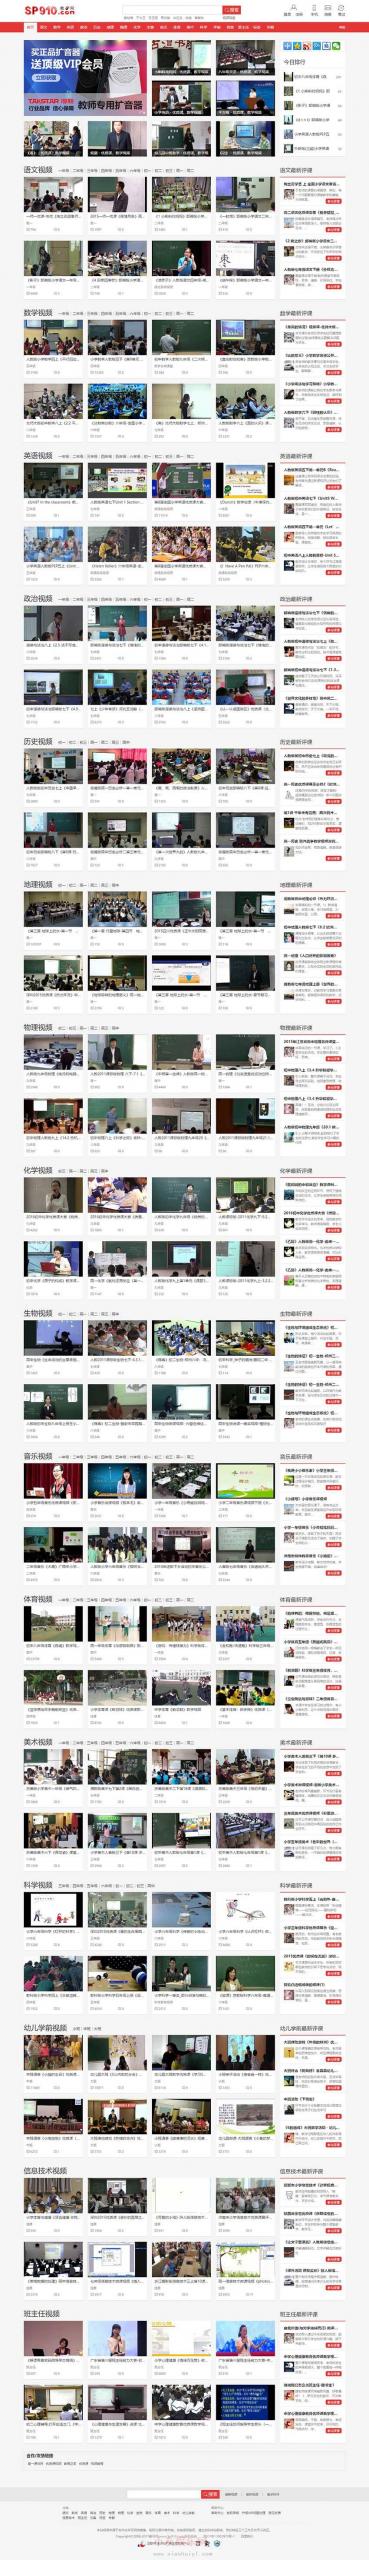 帝国CMS《教视网》在线教学视频网站源码-爱微网